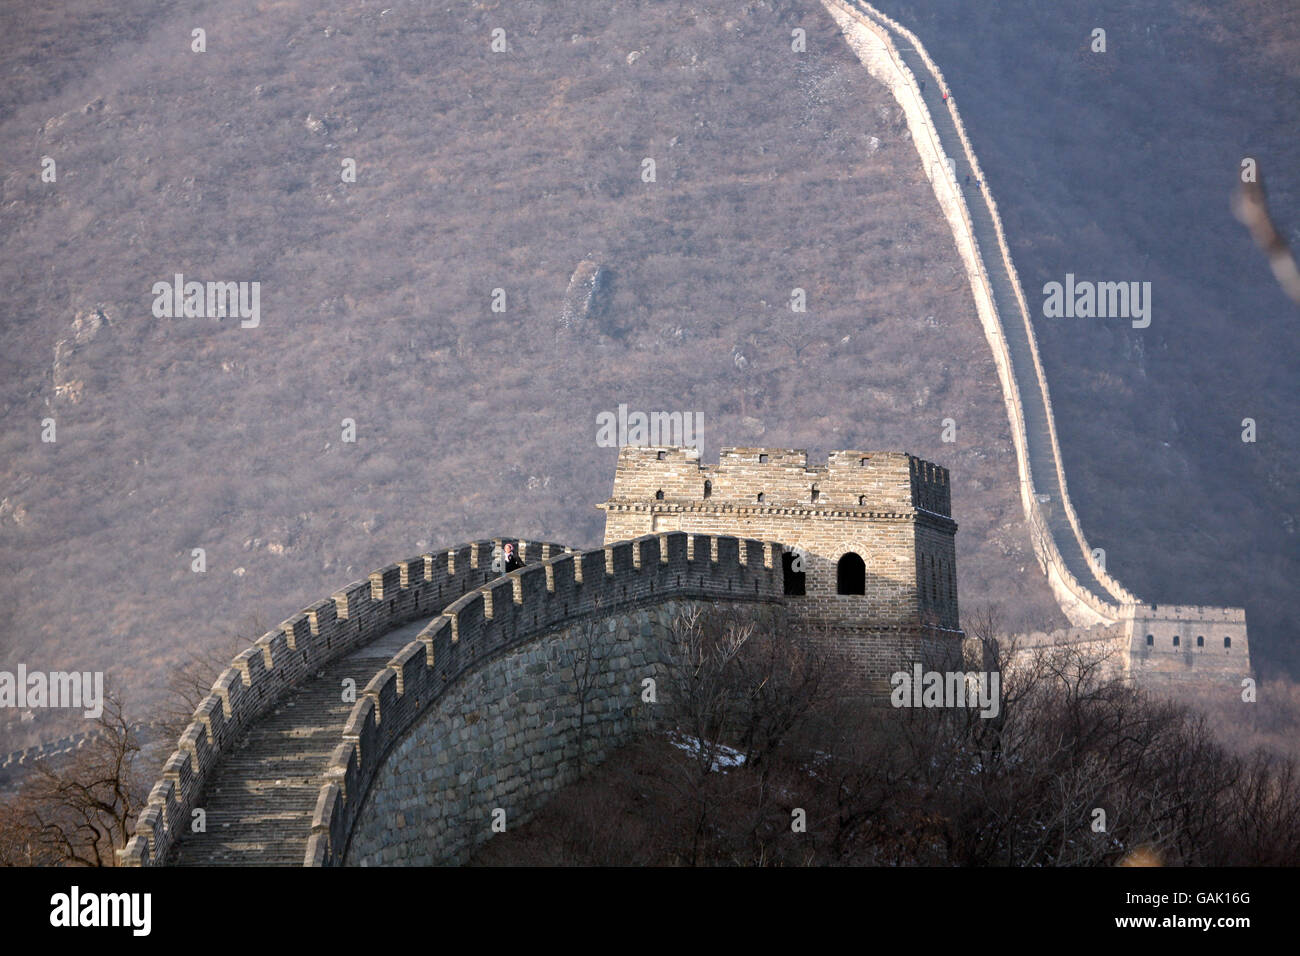 Photo de la Grande Muraille de Chine à Mutianyu Qui est situé dans le district de Huairou à Beijing Banque D'Images